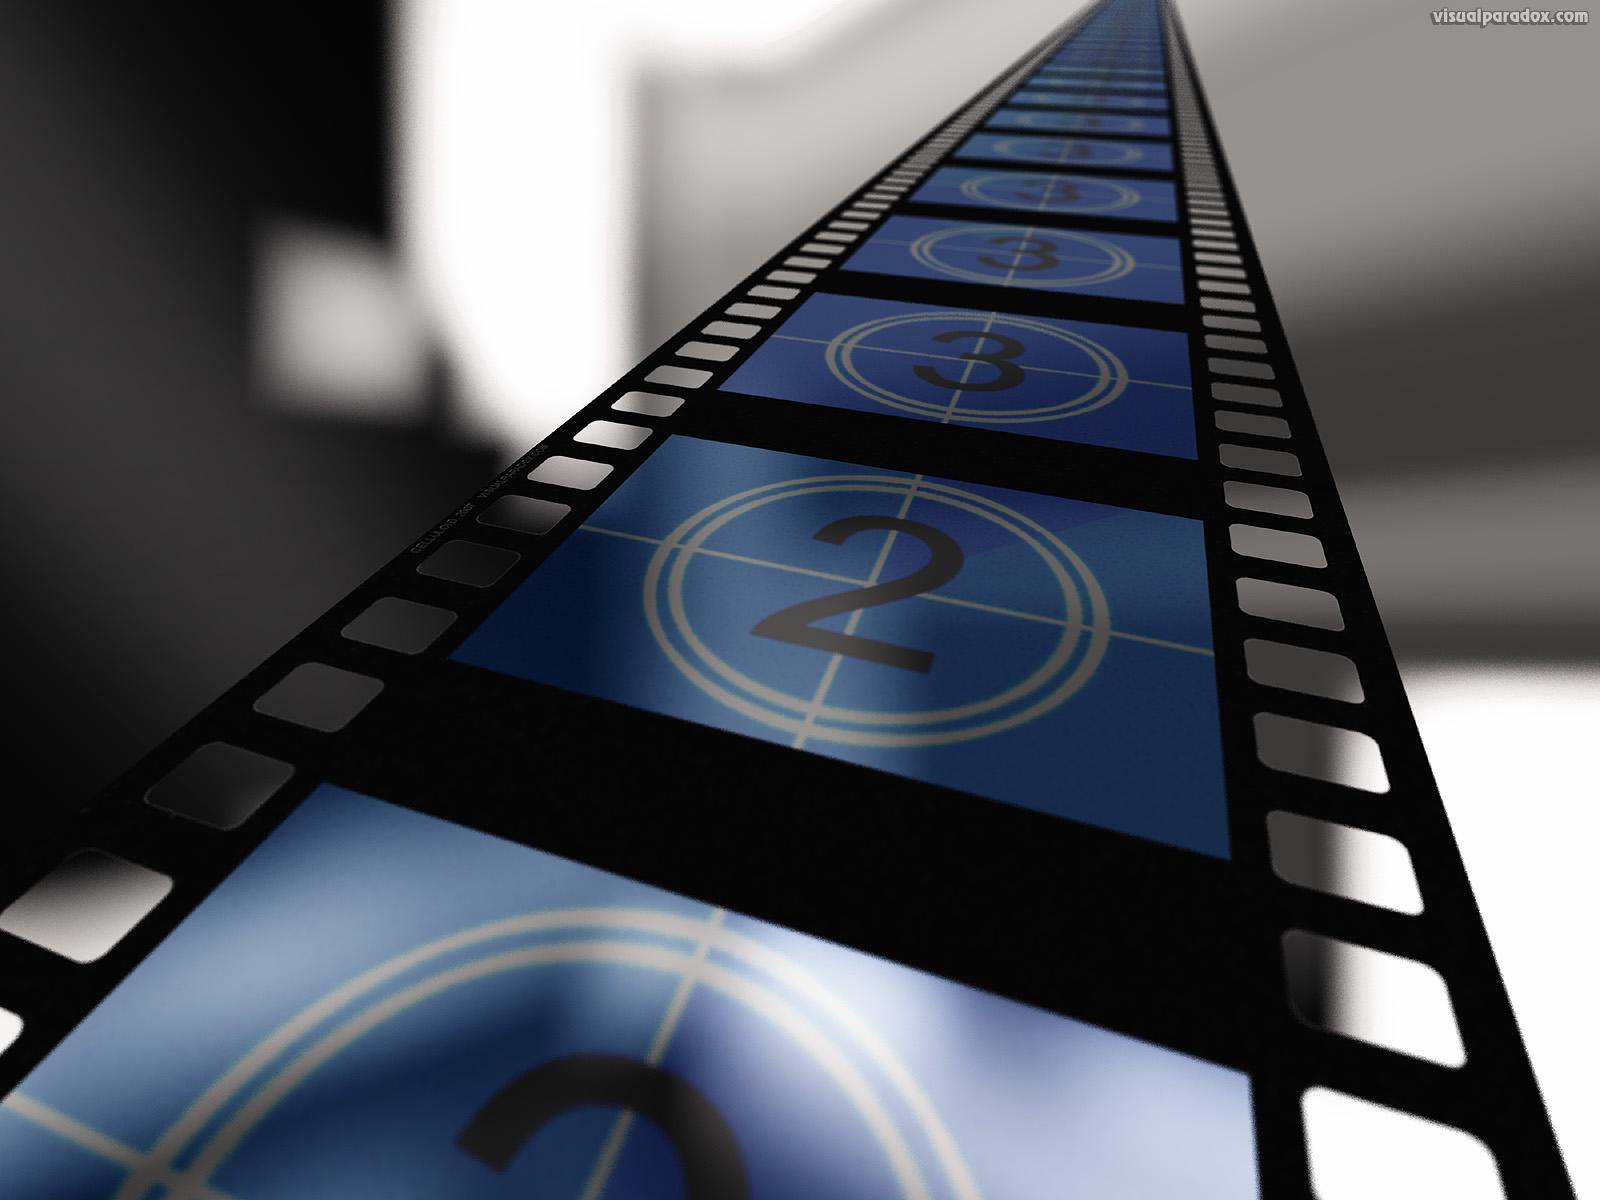 produccion audiovisual historia del cine